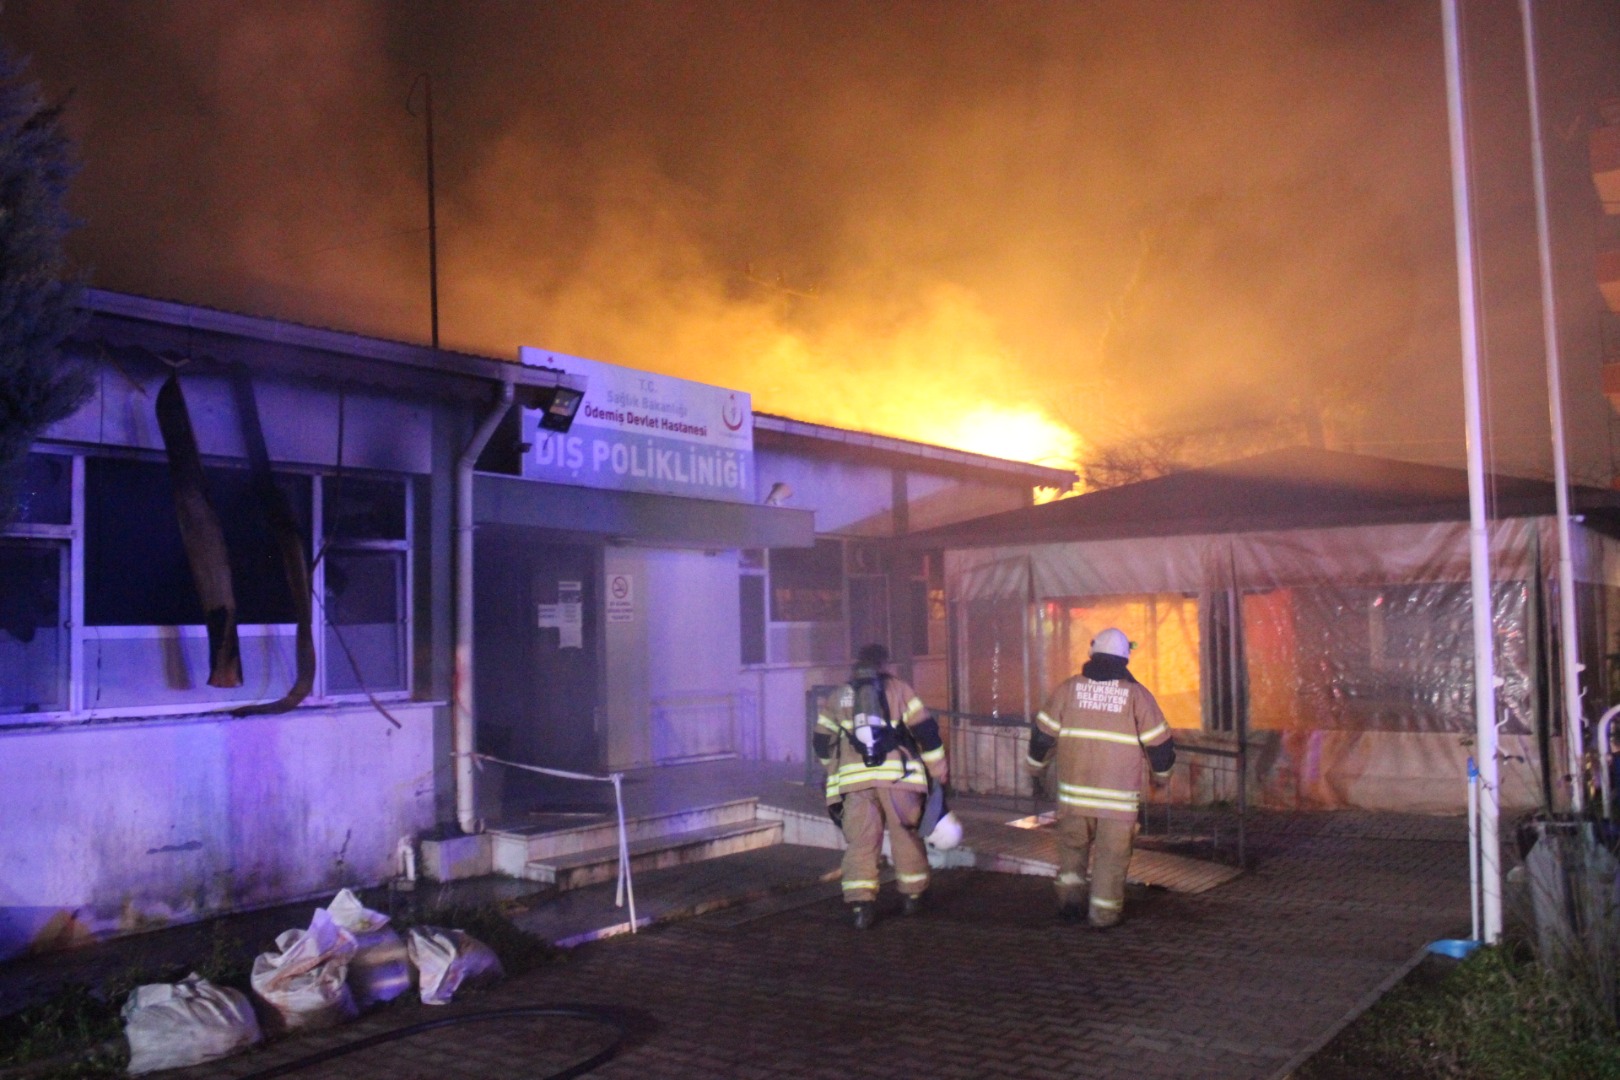 İzmir'de diş polikliniğinde yangın